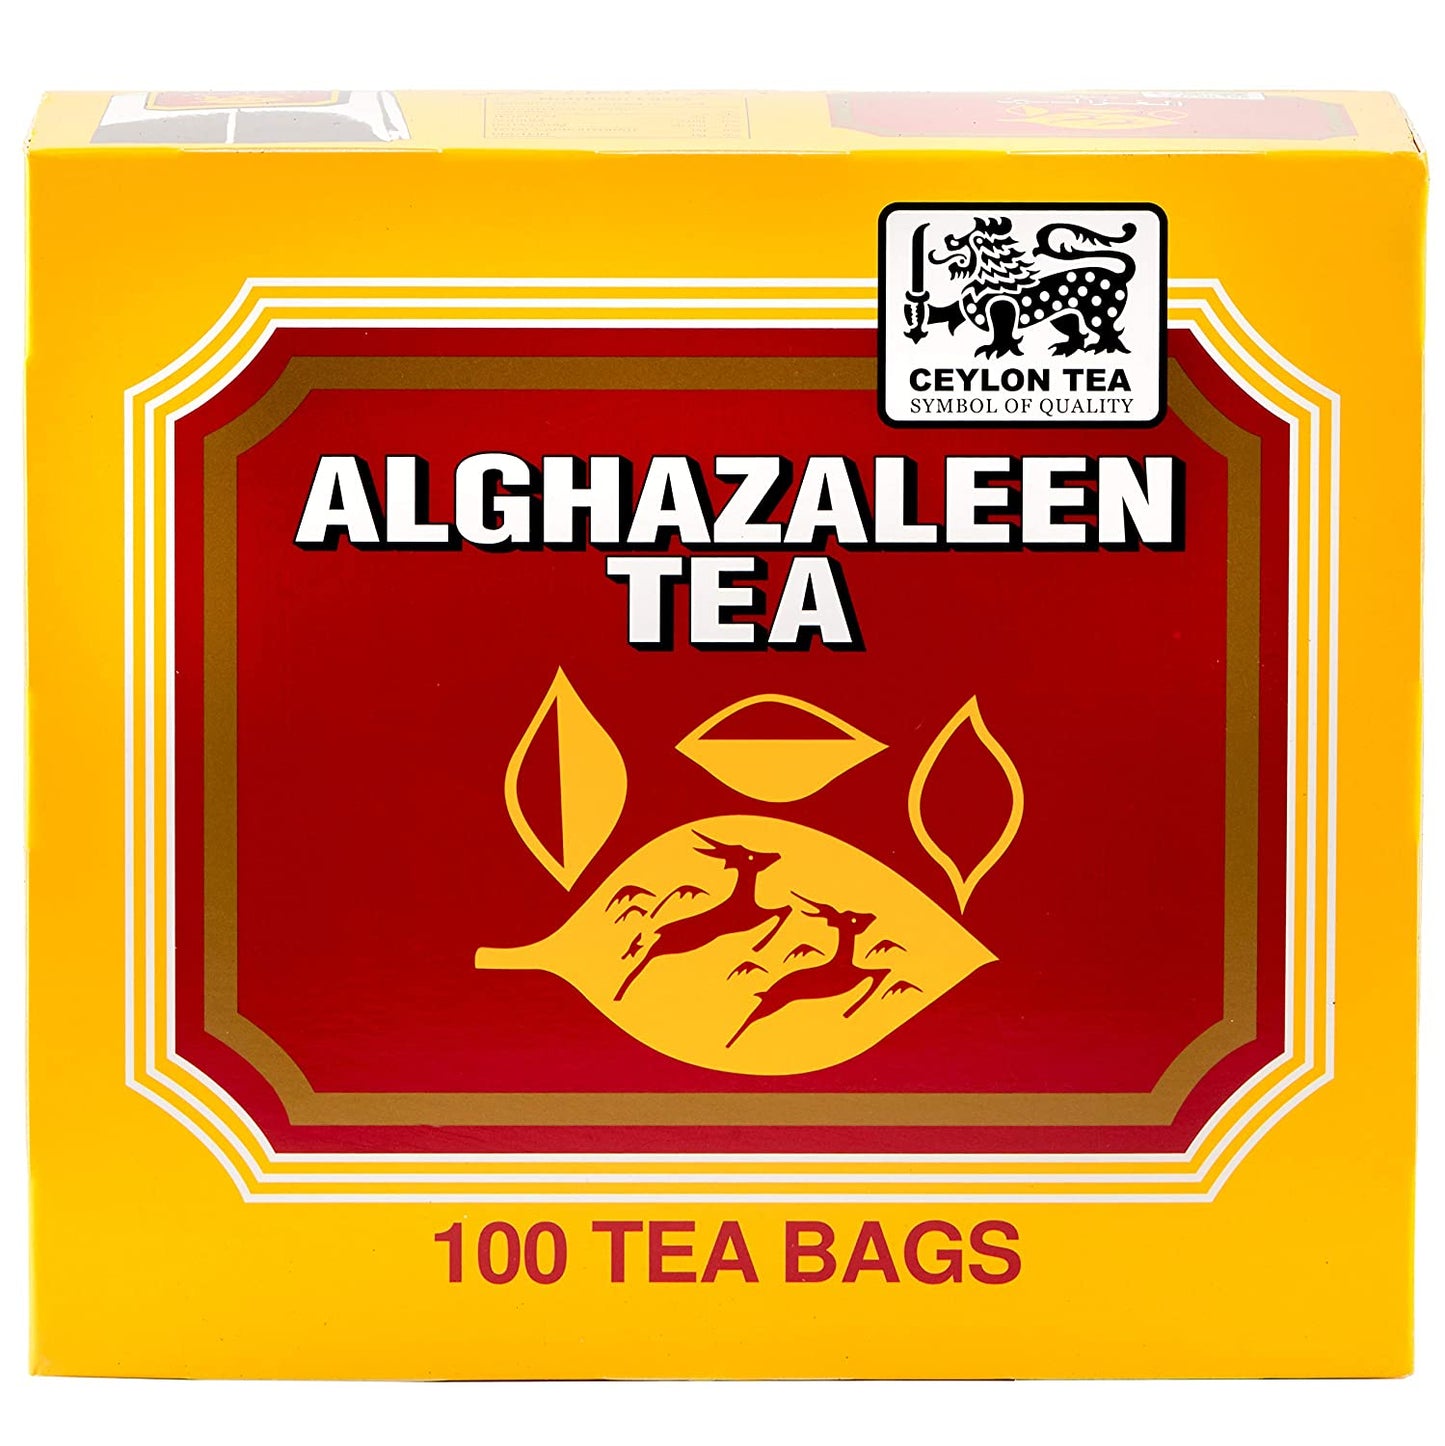 Alghazaleen Pure Ceylon Tea 100 Bags - Mideast Grocers